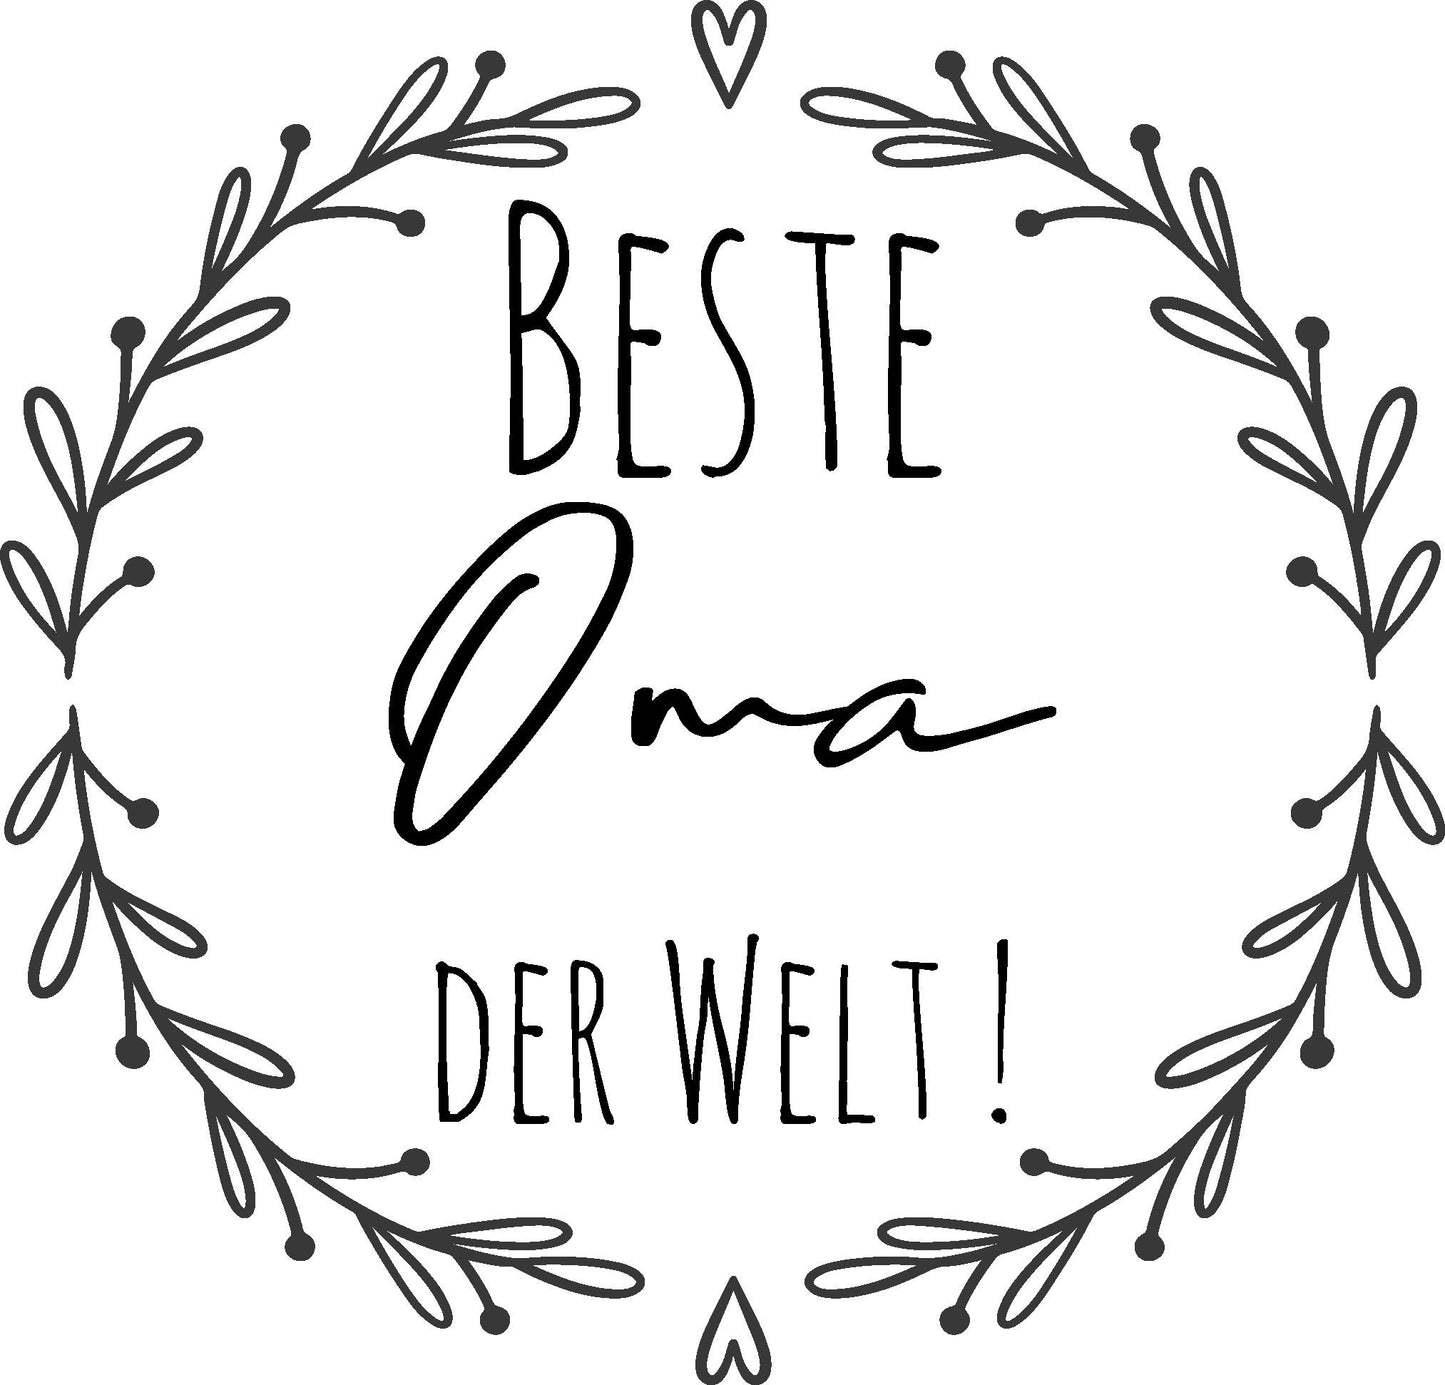 Kissen Beste Mama/Papa/Oma/Opa/Tante der Welt! für Kissen/Muttertag/Vatertag/Geschenk